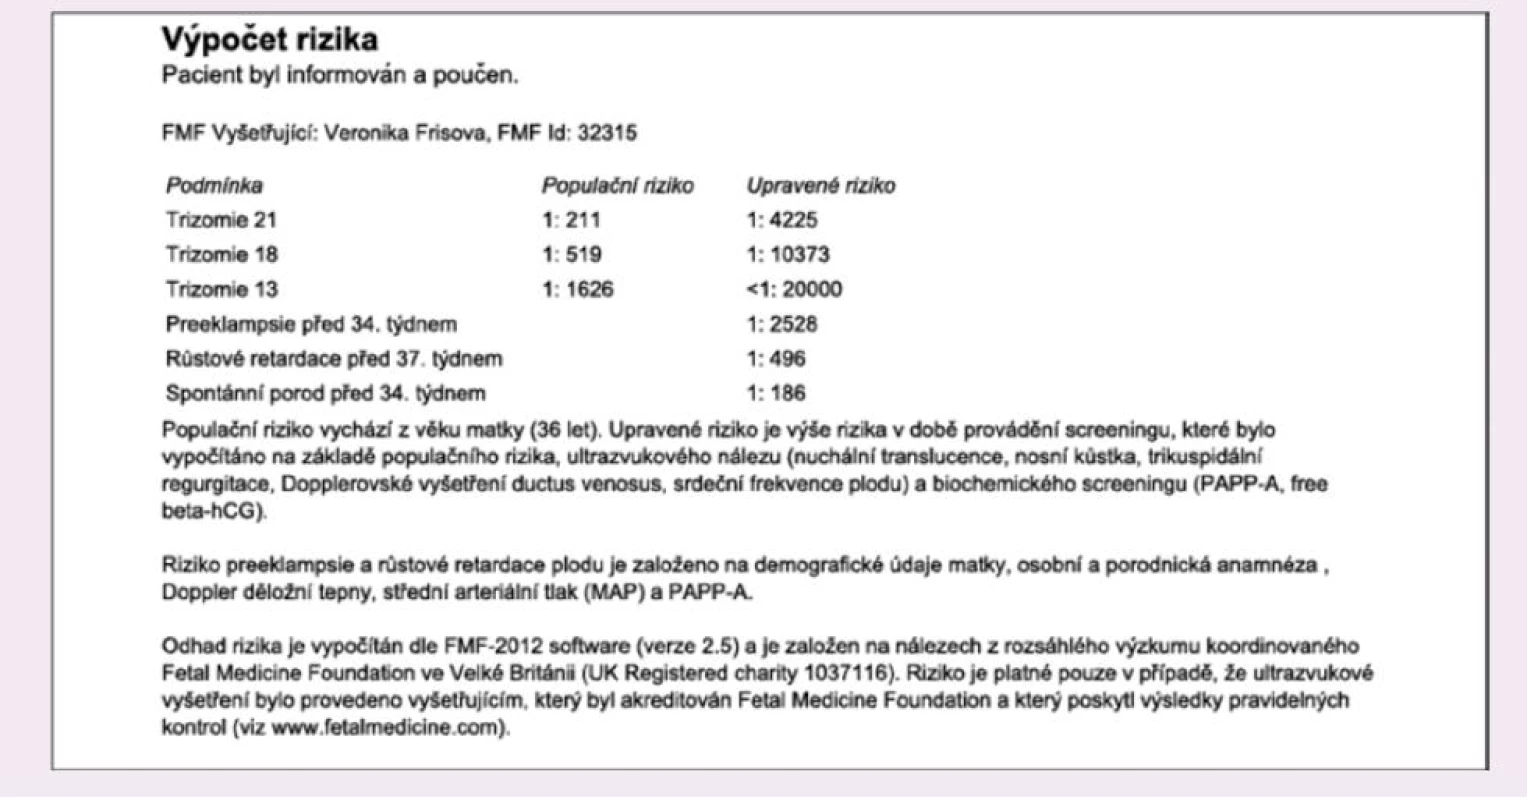 Ukázka zprávy z FMF rizikového modulu či softwaru ASTRAIA týkající se výpočtu rizika chromozomálních vad (a komplikací těhotenství). Vždy je nad výčtem rizik postižení plodu uvedeno FMF ID vyšetřujícího lékaře a pod výčtem rizik vyjmenováno, z čeho bylo riziko chromozomálních vad kalkulováno. Navíc je ve spodní části textu zmíněno, že byl využit FMF software.